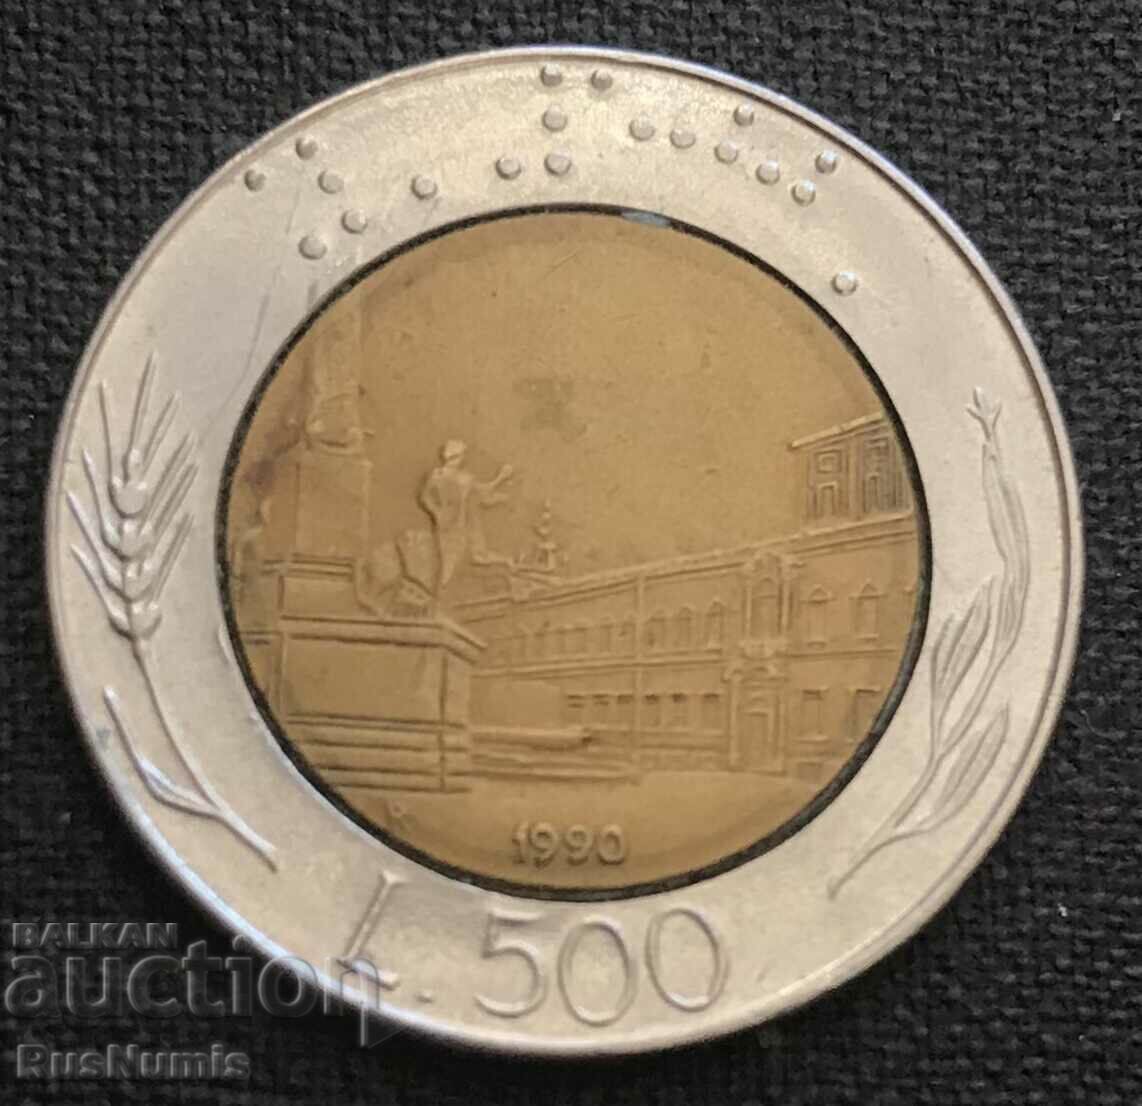 Italy.500 lira 1990.